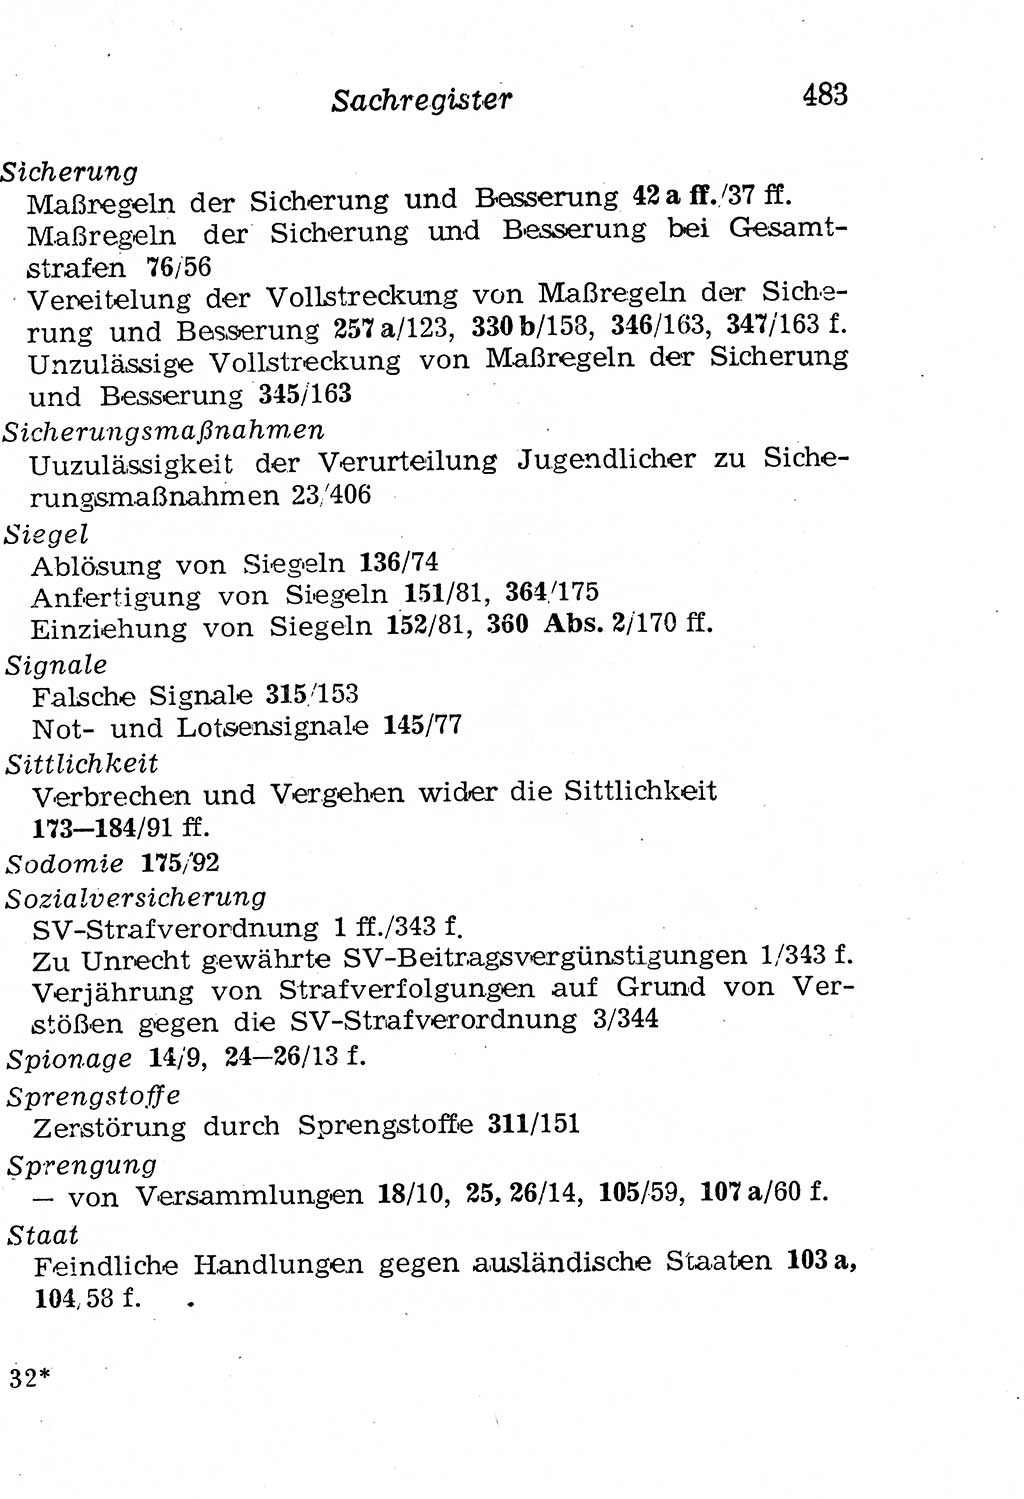 Strafgesetzbuch (StGB) und andere Strafgesetze [Deutsche Demokratische Republik (DDR)] 1958, Seite 483 (StGB Strafges. DDR 1958, S. 483)